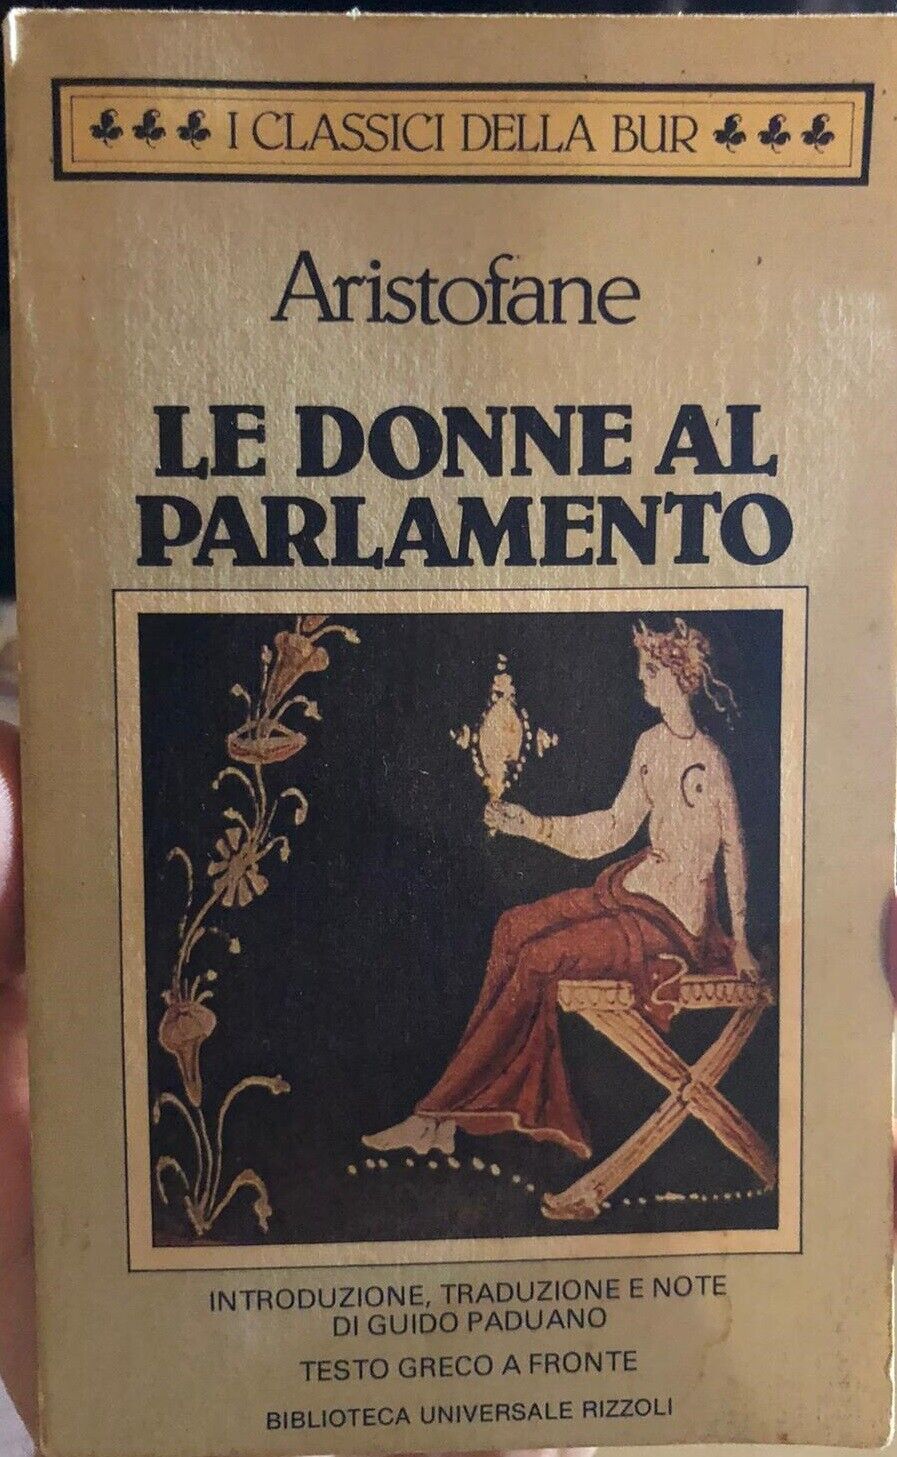 Le donne al parlamento di Aristofane, 1984, Rizzoli